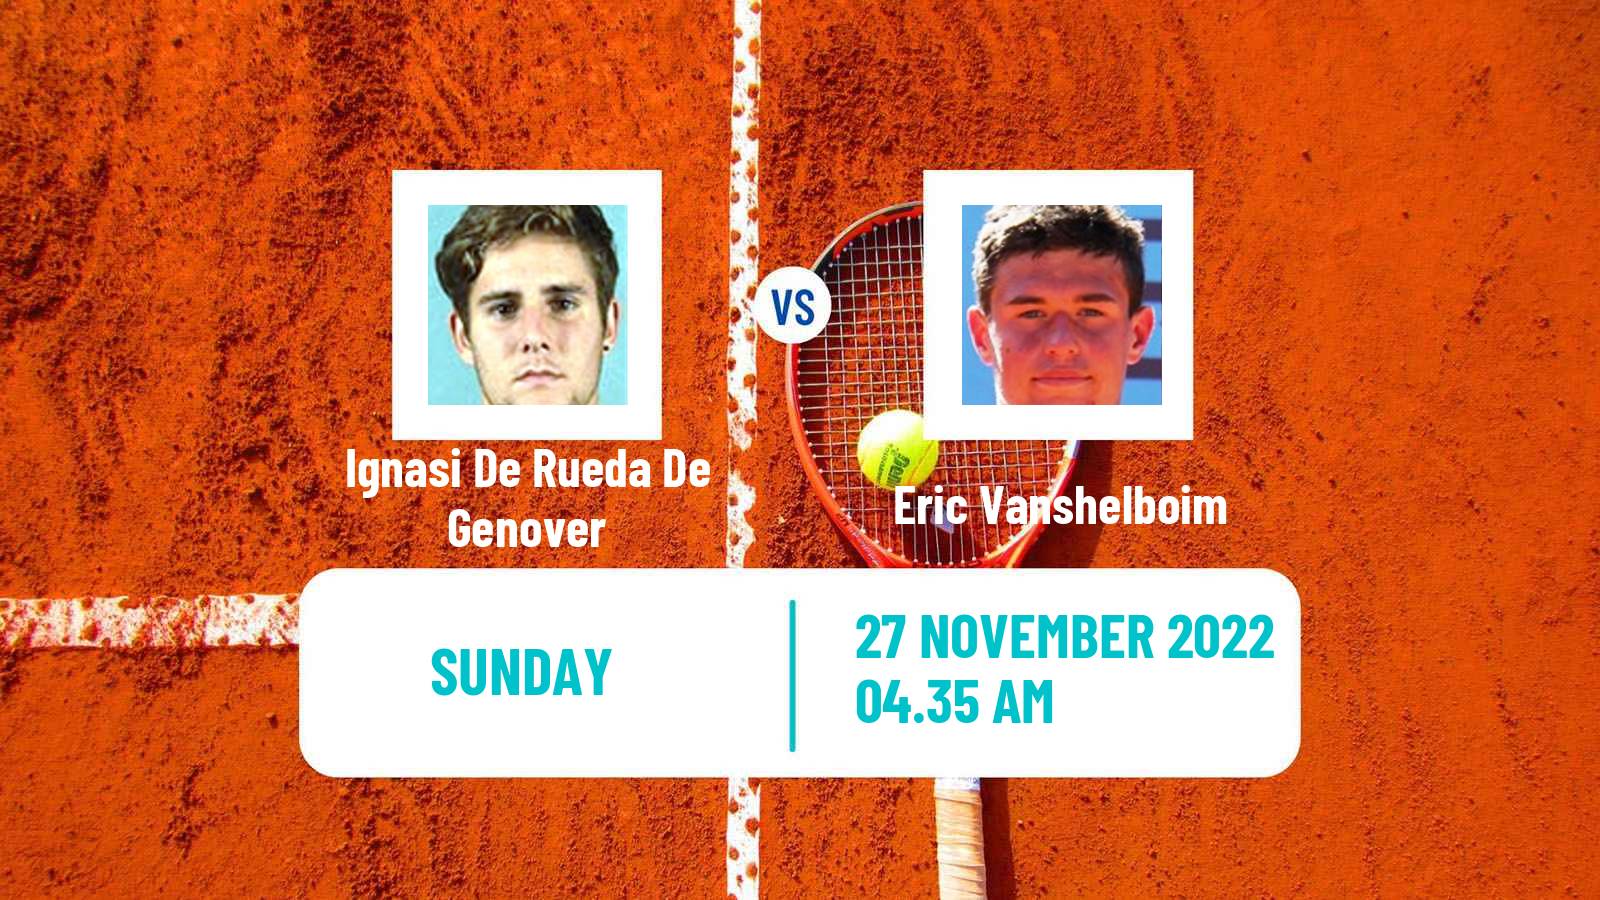 Tennis ATP Challenger Ignasi De Rueda De Genover - Eric Vanshelboim